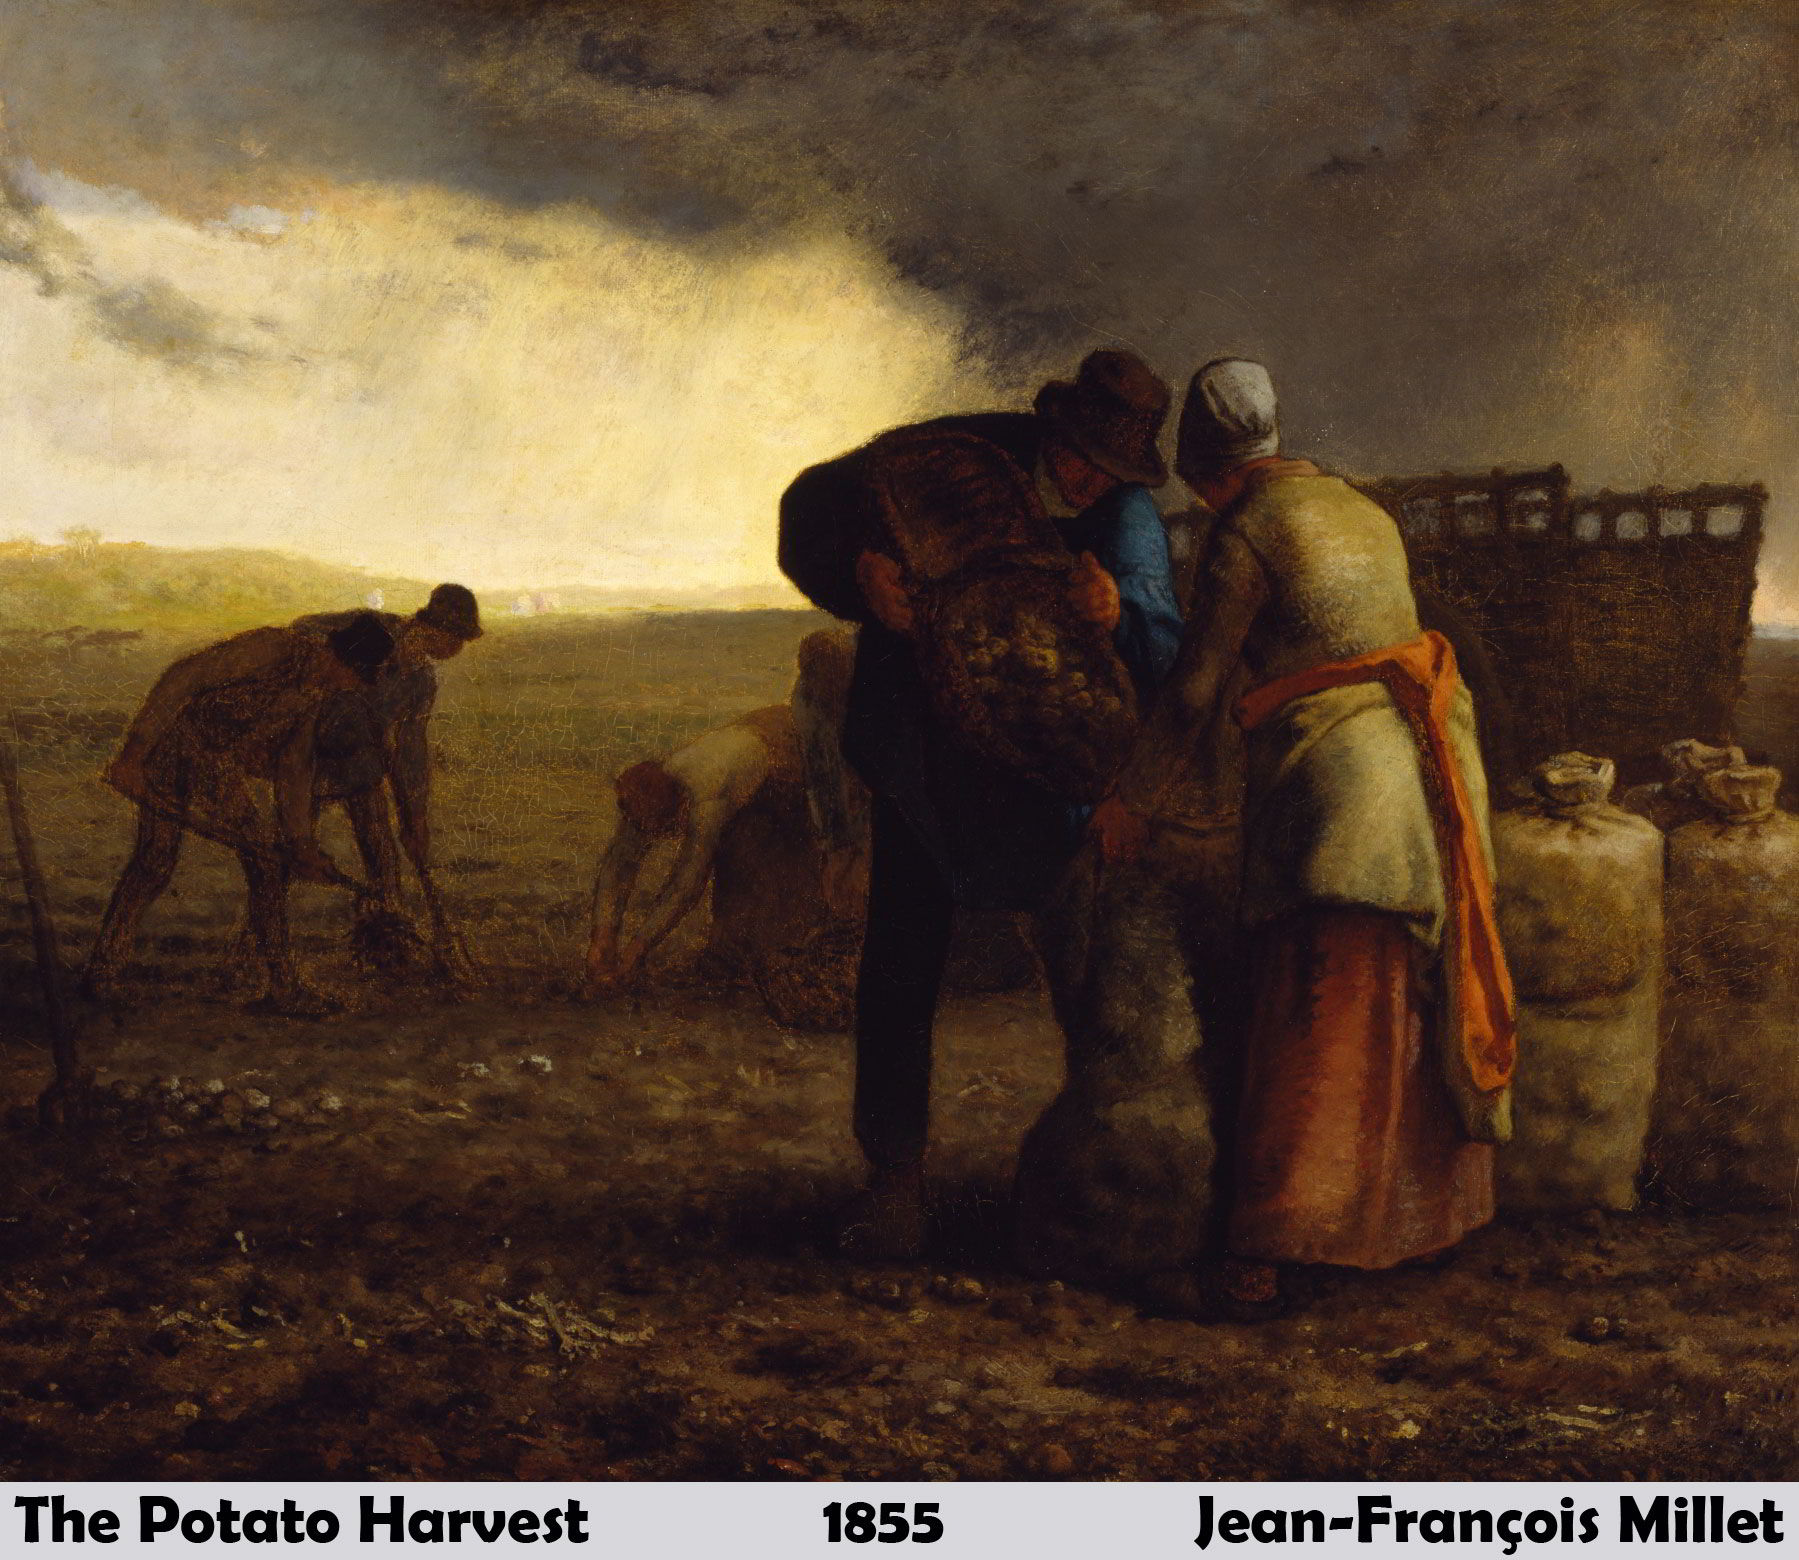 The Potato Harvest by Jean-François Millet